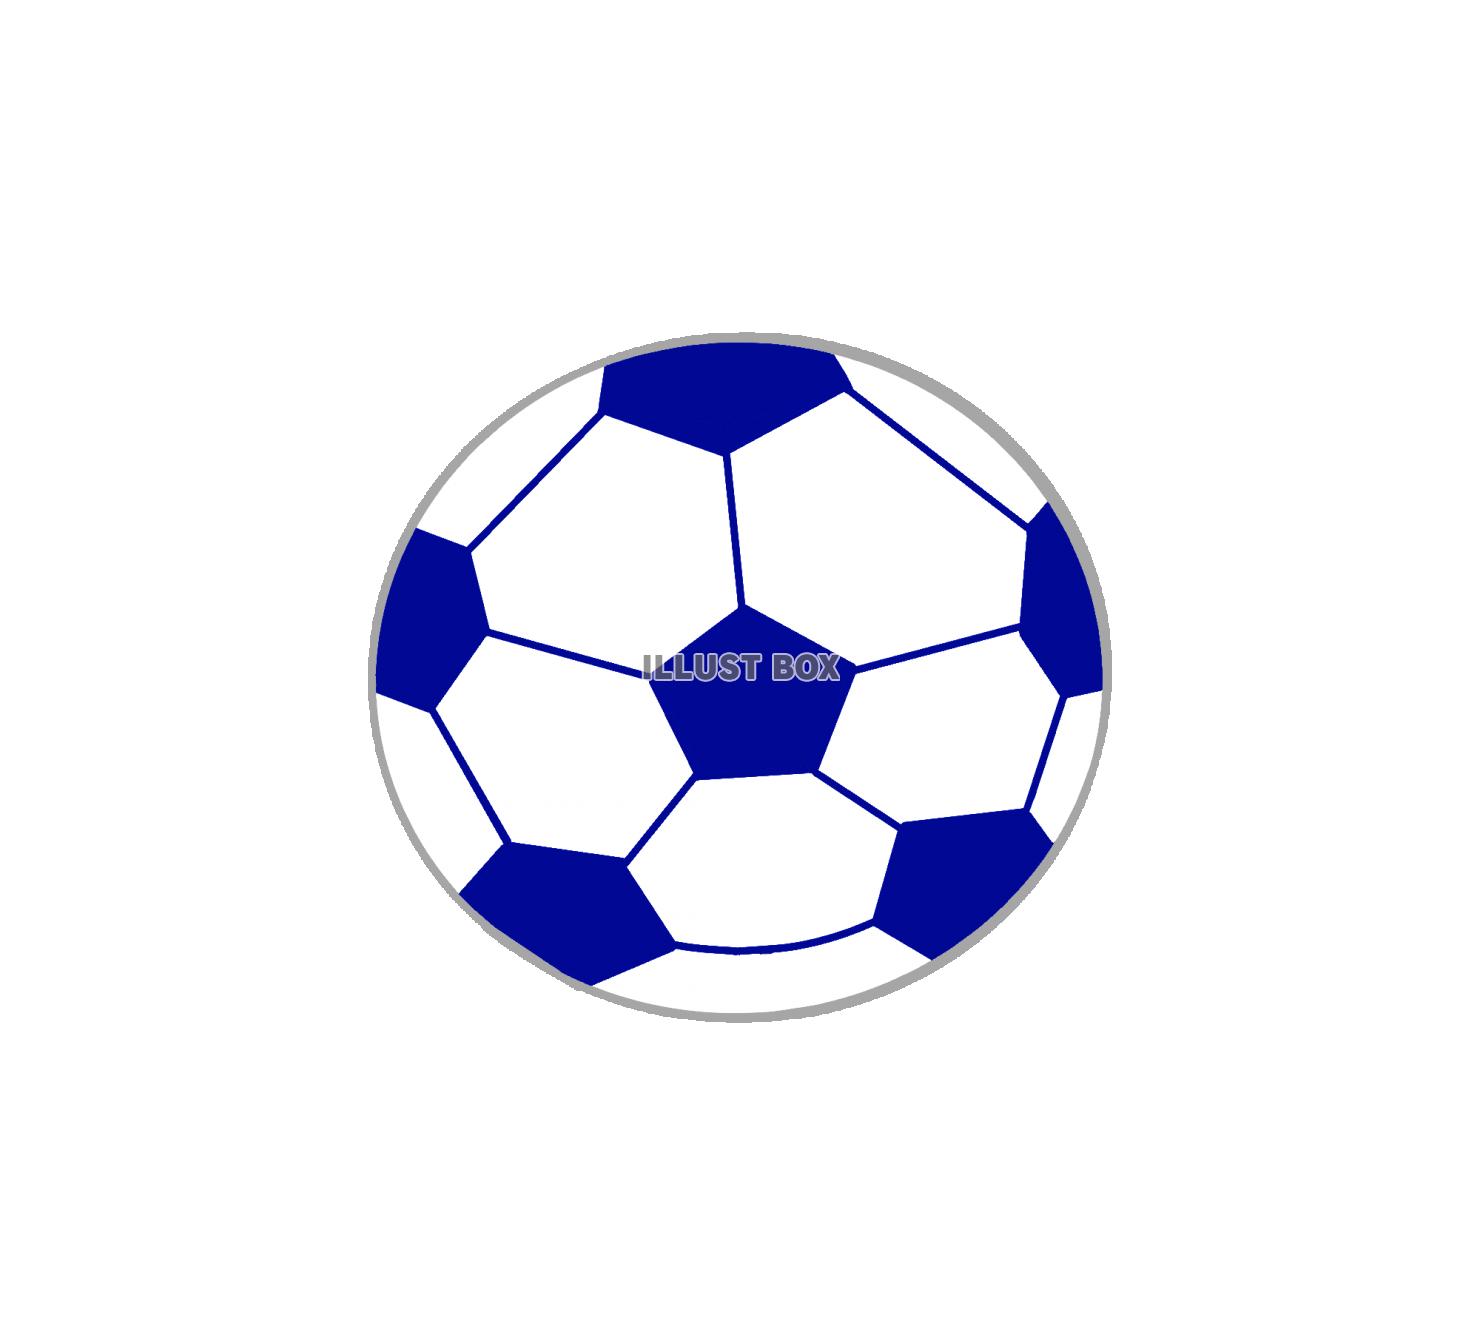 簡単 サッカー ボール イラスト